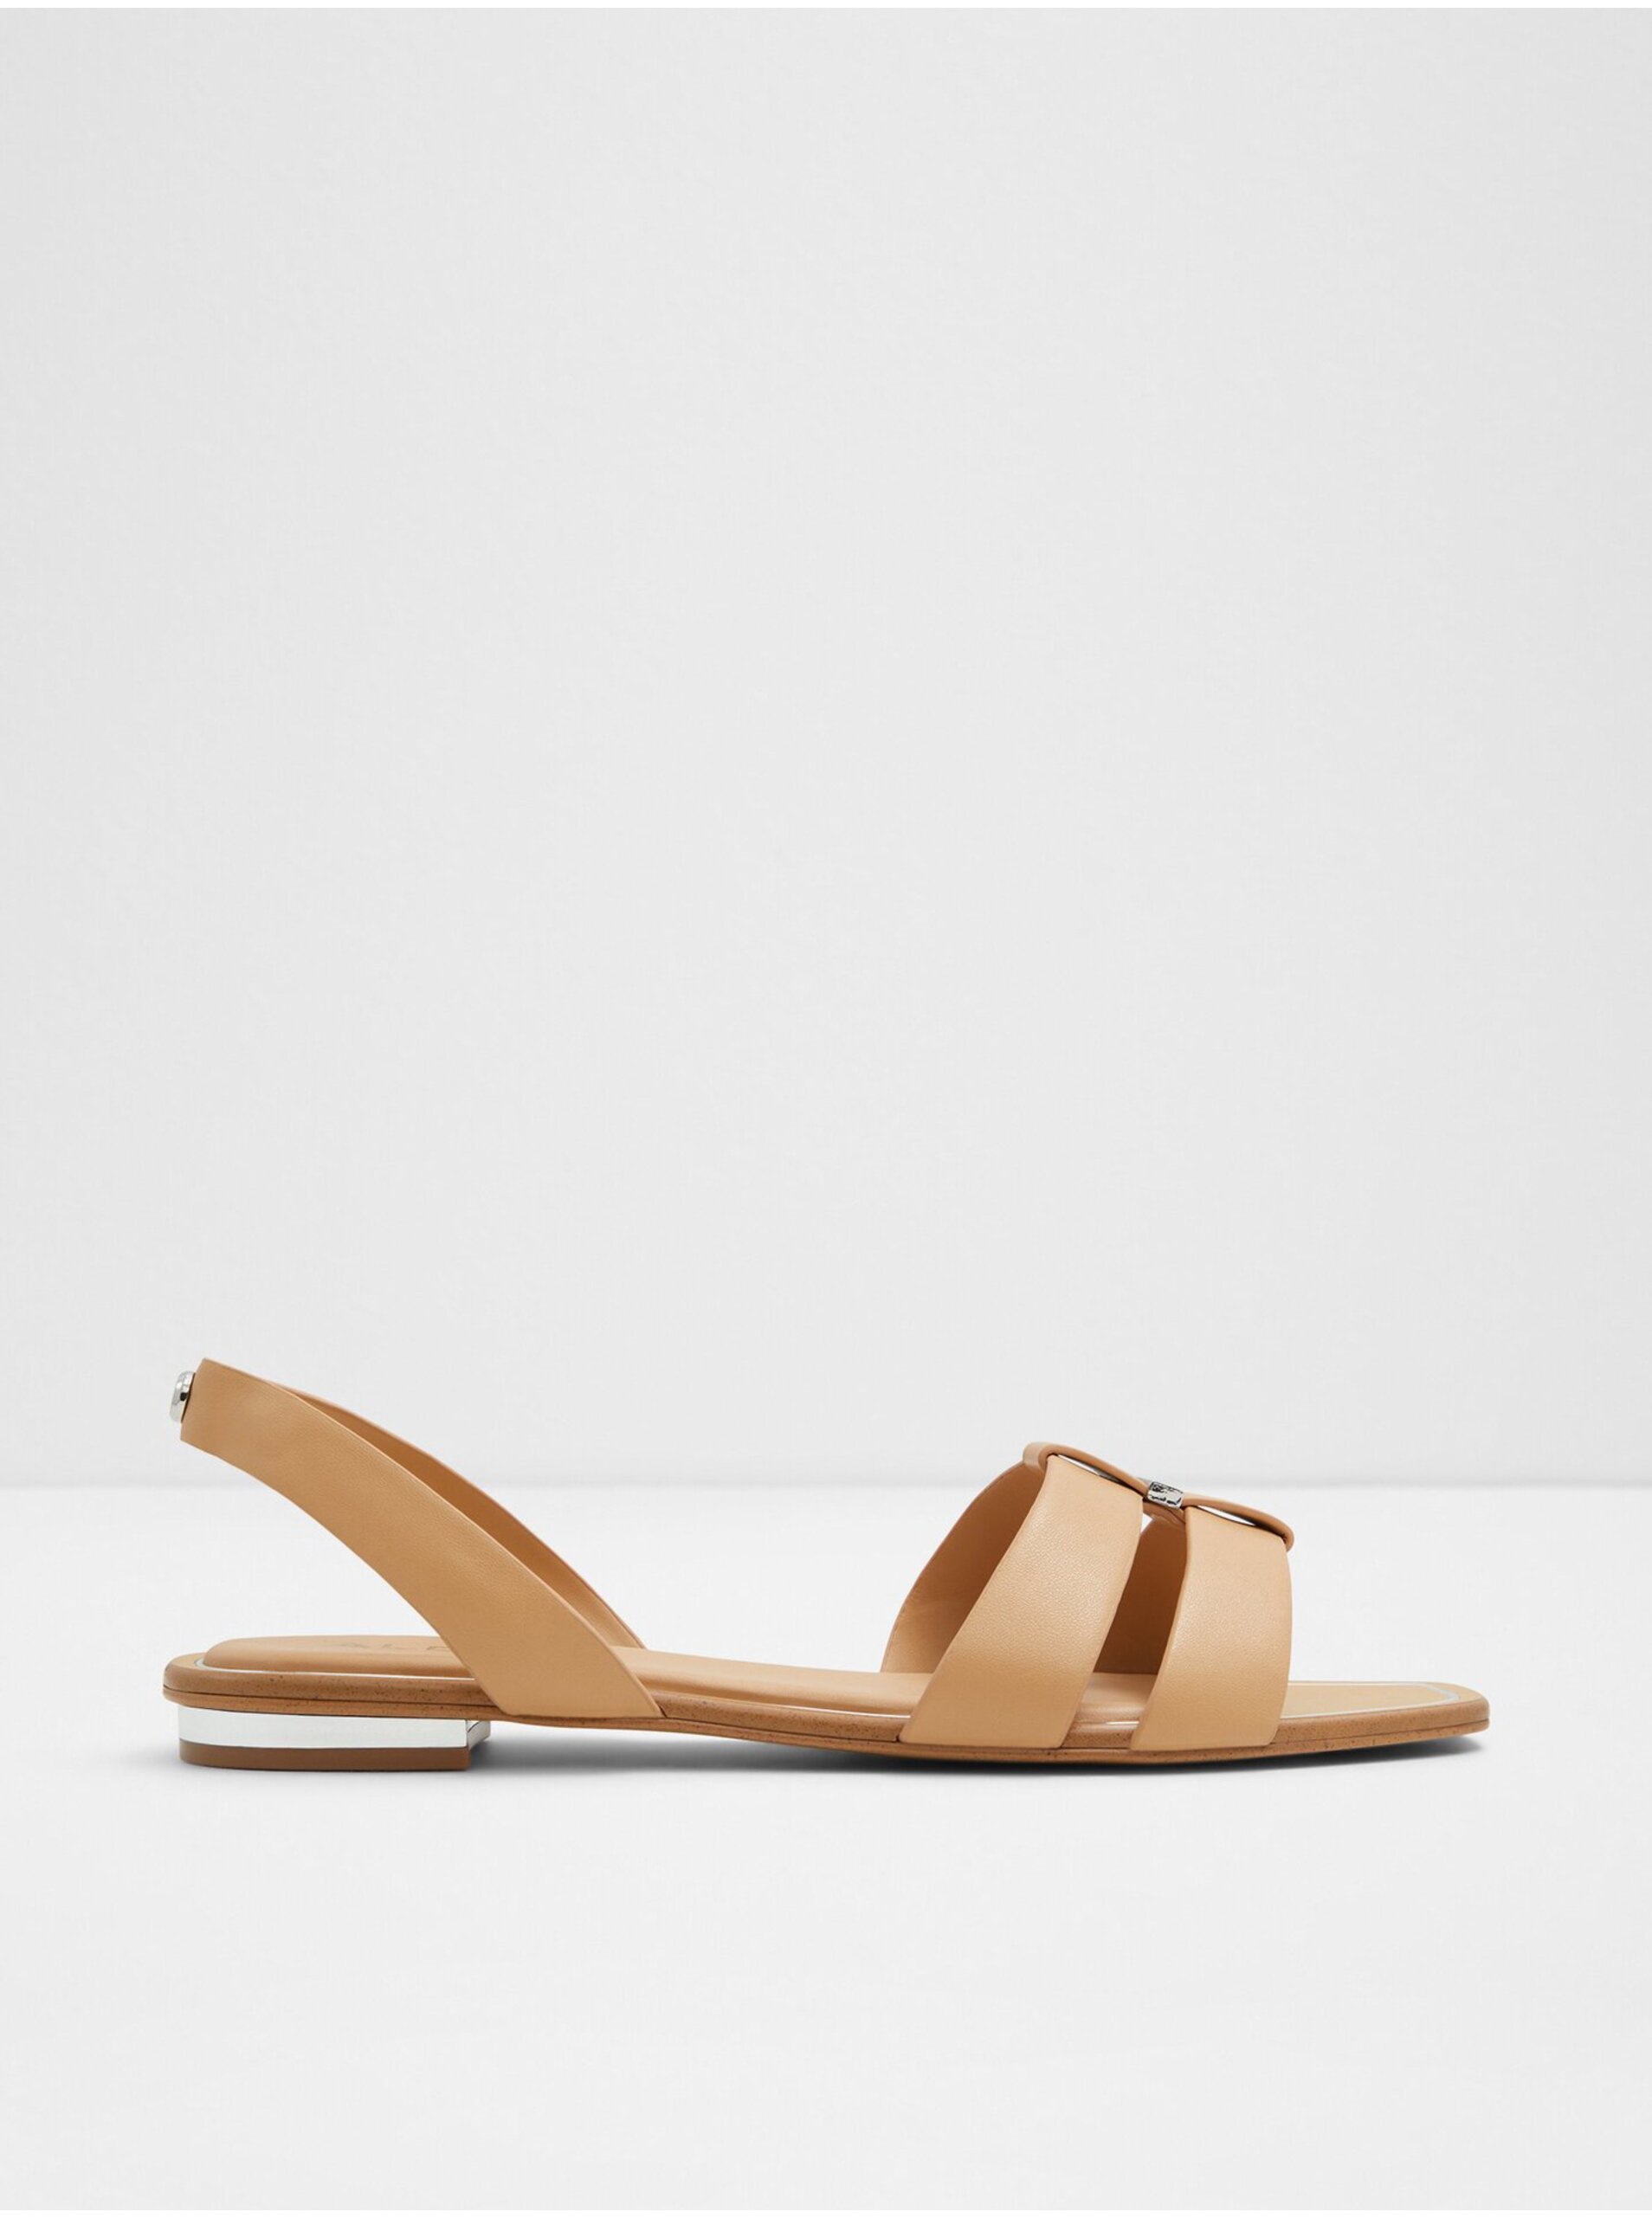 E-shop Béžové dámske sandále ALDO Balera